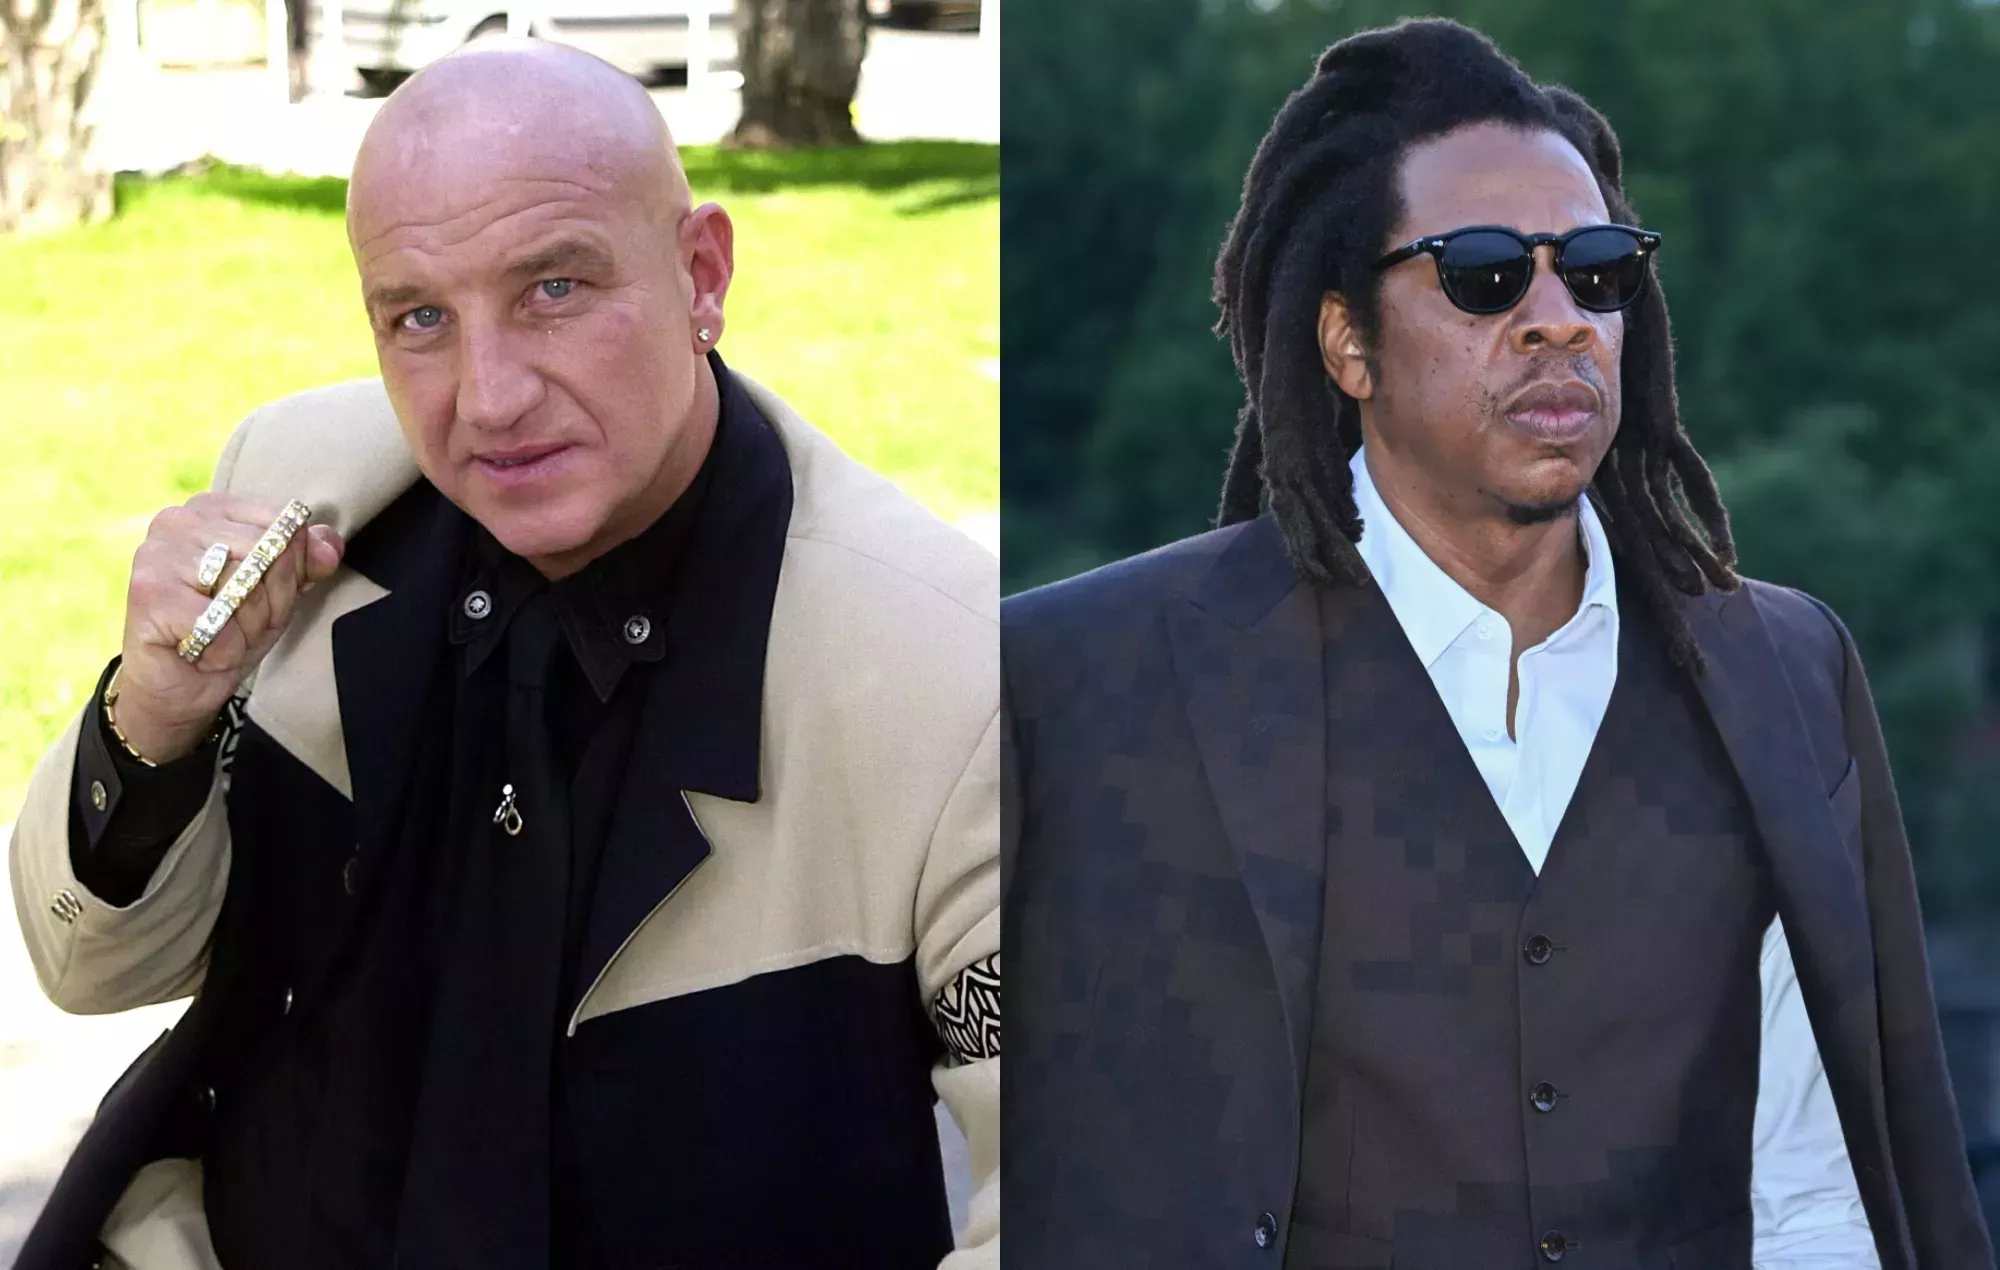 Los fans recuerdan cómo el gángster convertido en actor Dave Courtney inspiró a Jay-Z